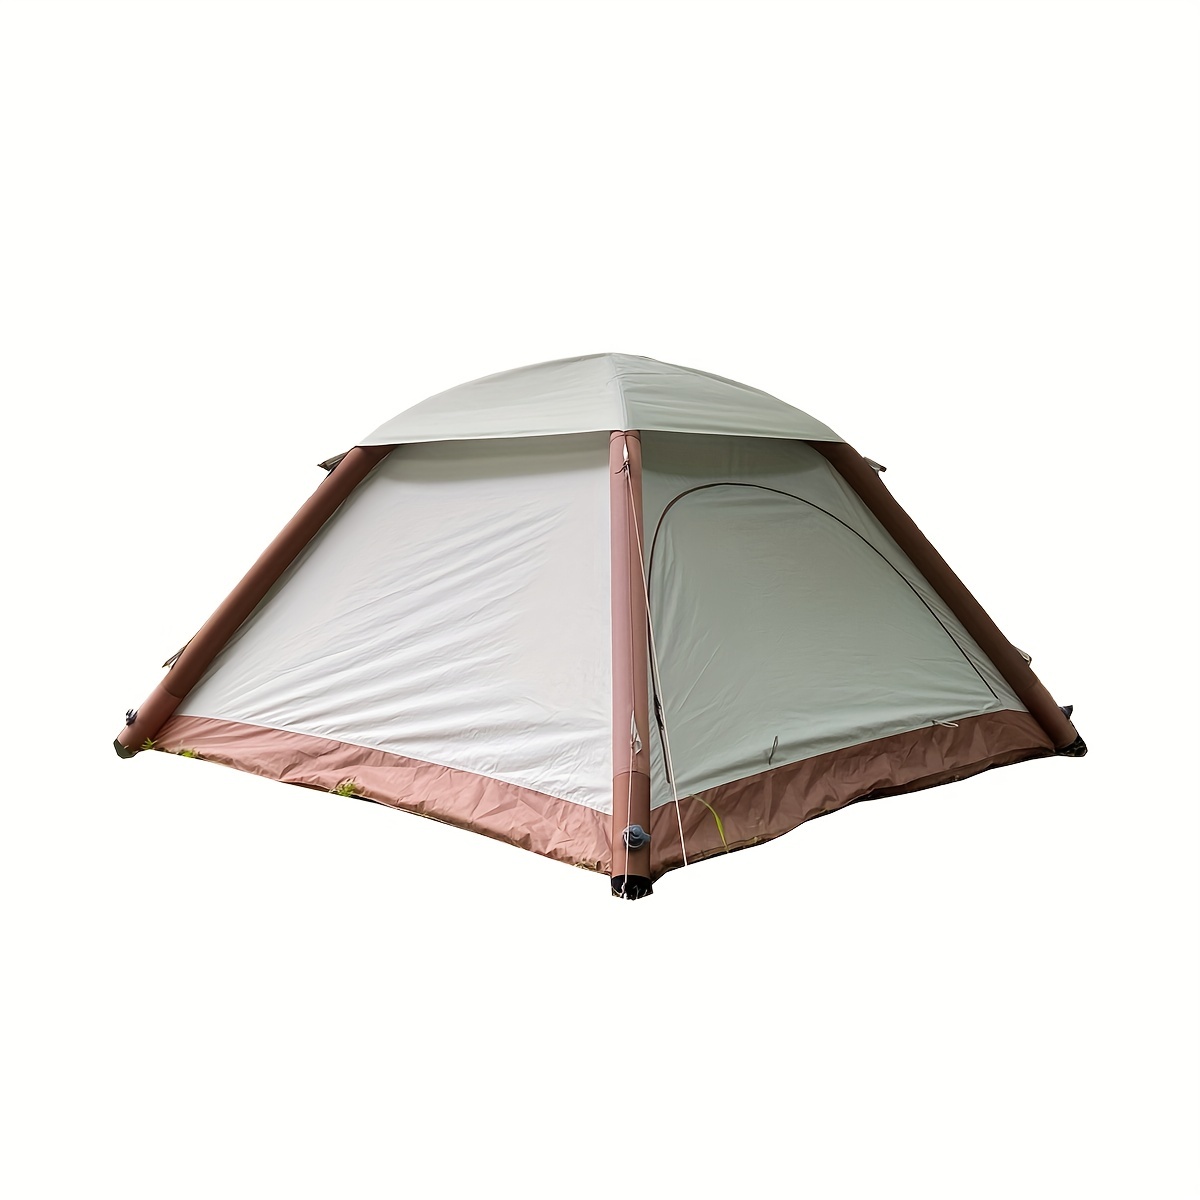 Recensioni utenti: Tenda campeggio ARPENAZ 4.1